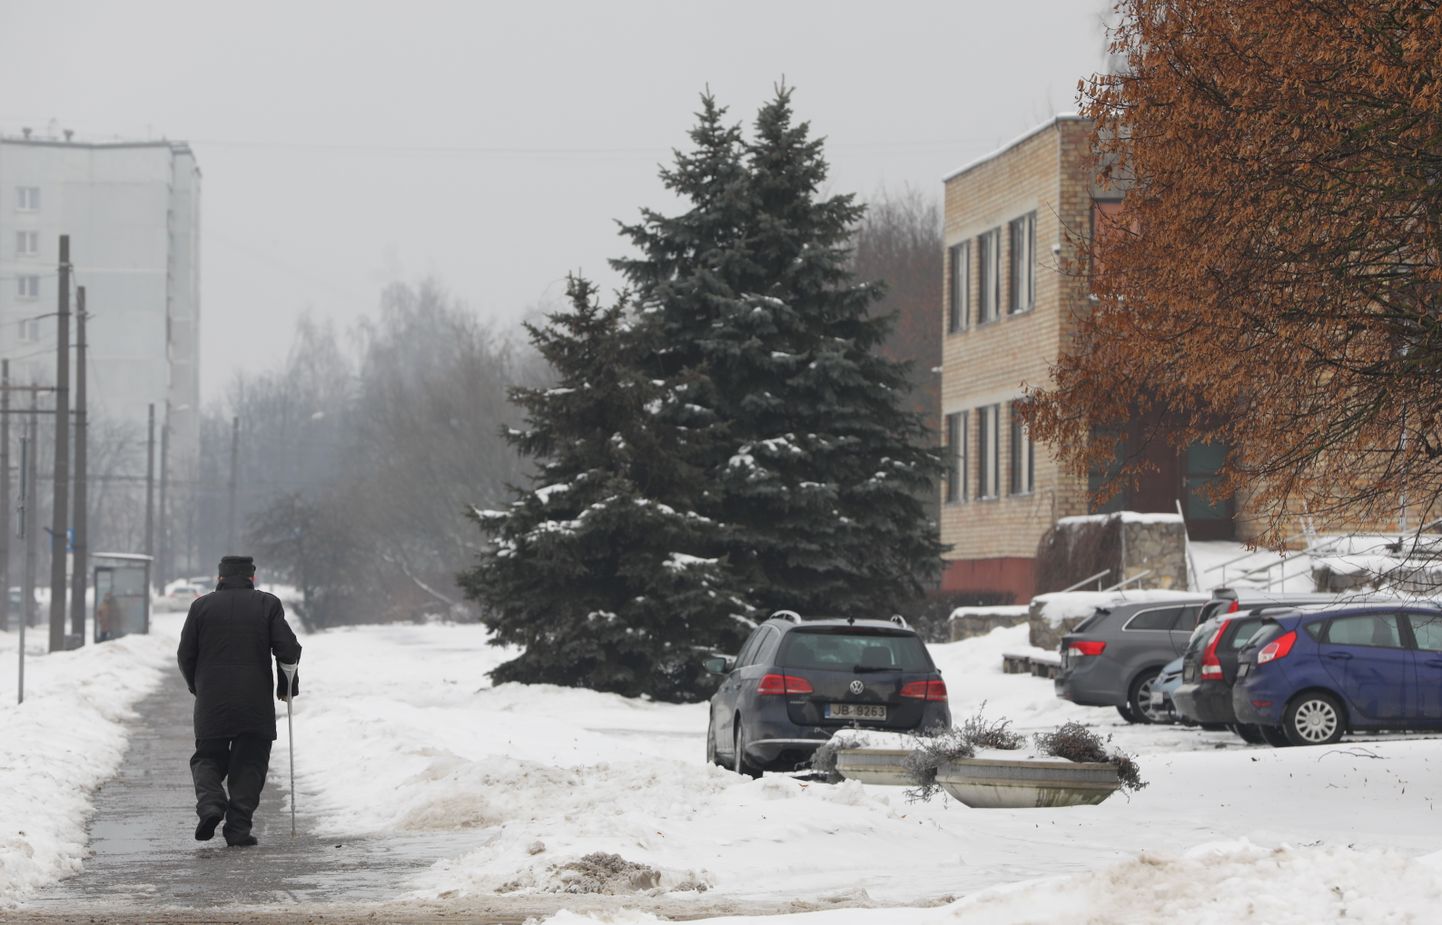 Vīrietis uz ledainās ietves pie Rīgas sociālās aprūpes centra "Gaiļezers".